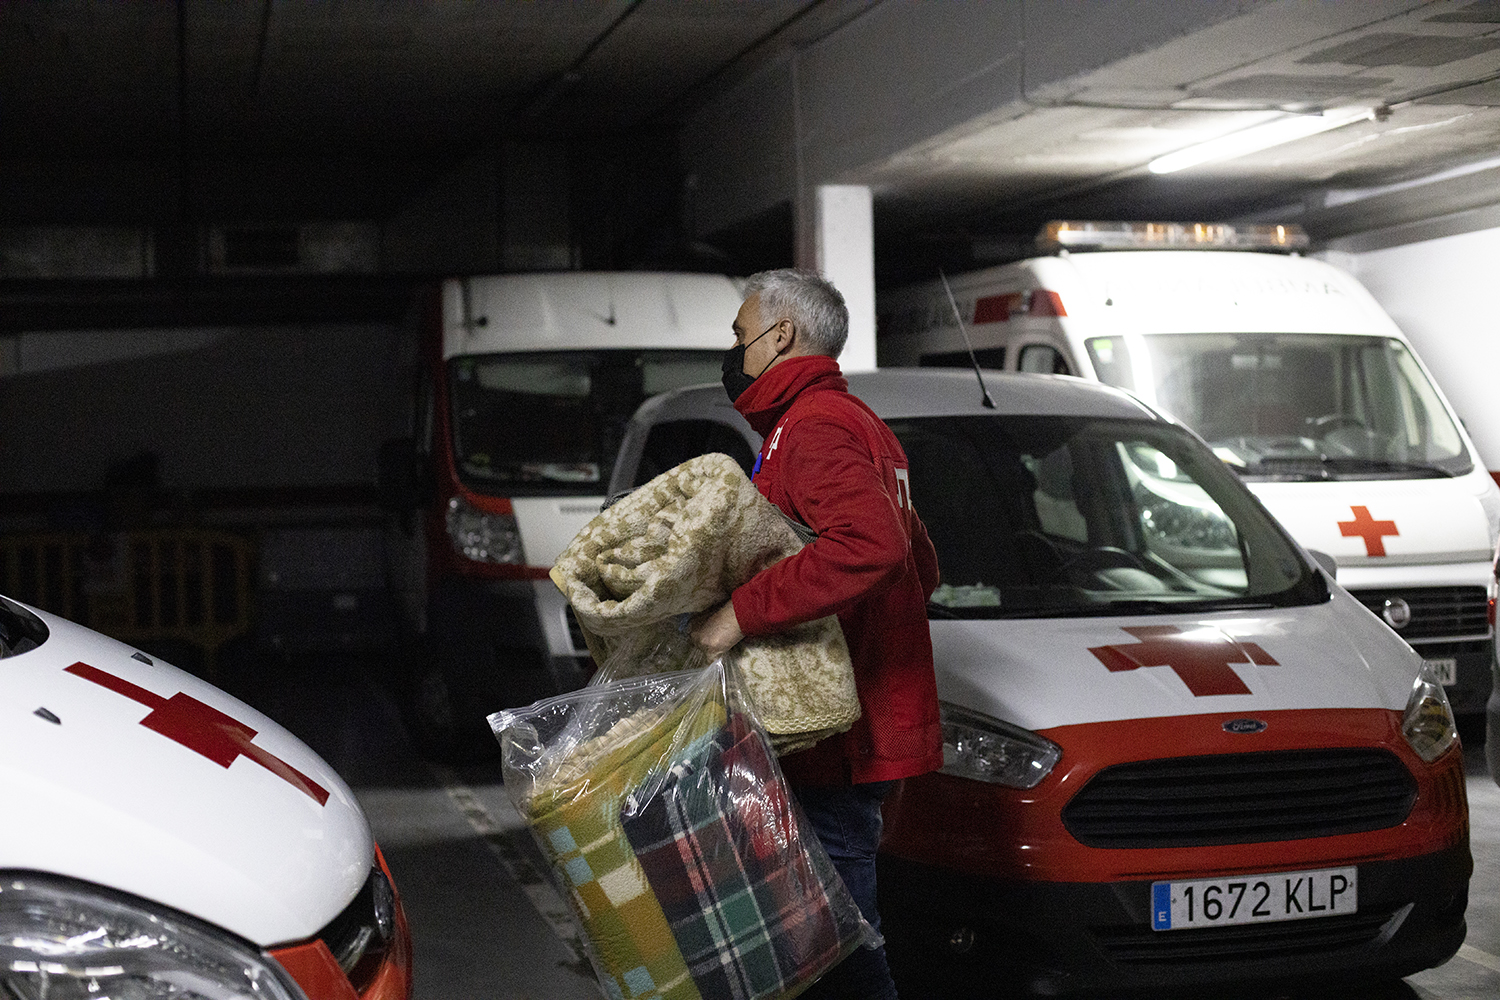 Les Unitats d’Emergència Social (UES) de la Creu Roja pentinen Sabadell per localitzar persones que viuen al carrer dos cops cada setmana i ofereixen brou calent, mantes, abric i mascaretes